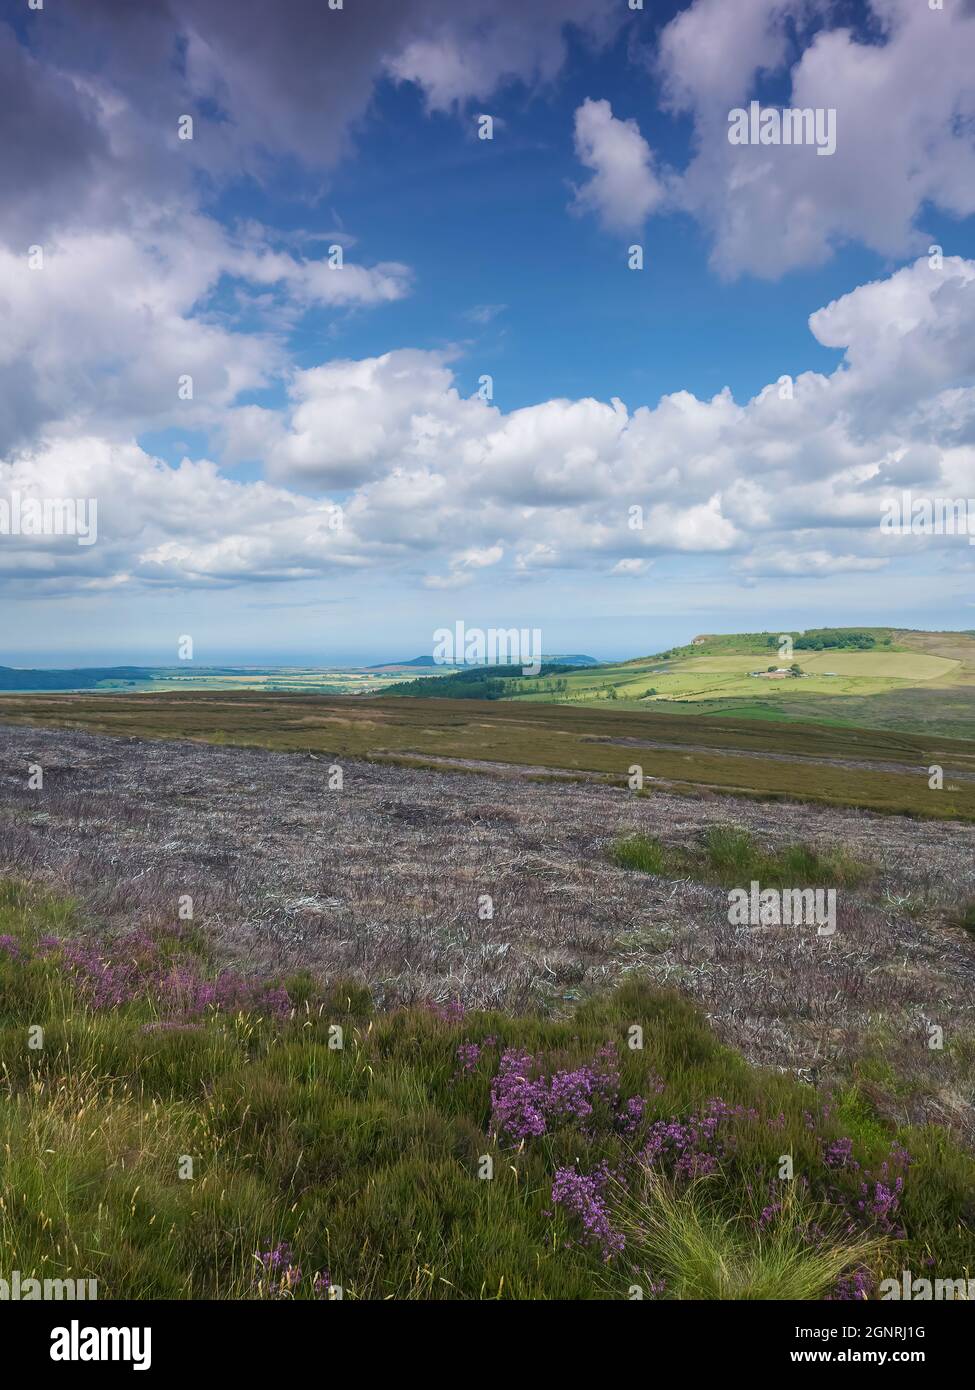 Brughiera con erica bruciata sulle colline ondulate, che conduce ad una fattoria collinare, circondata da ombre nuvolose dal morbido cumulo in un cielo blu profondo Foto Stock